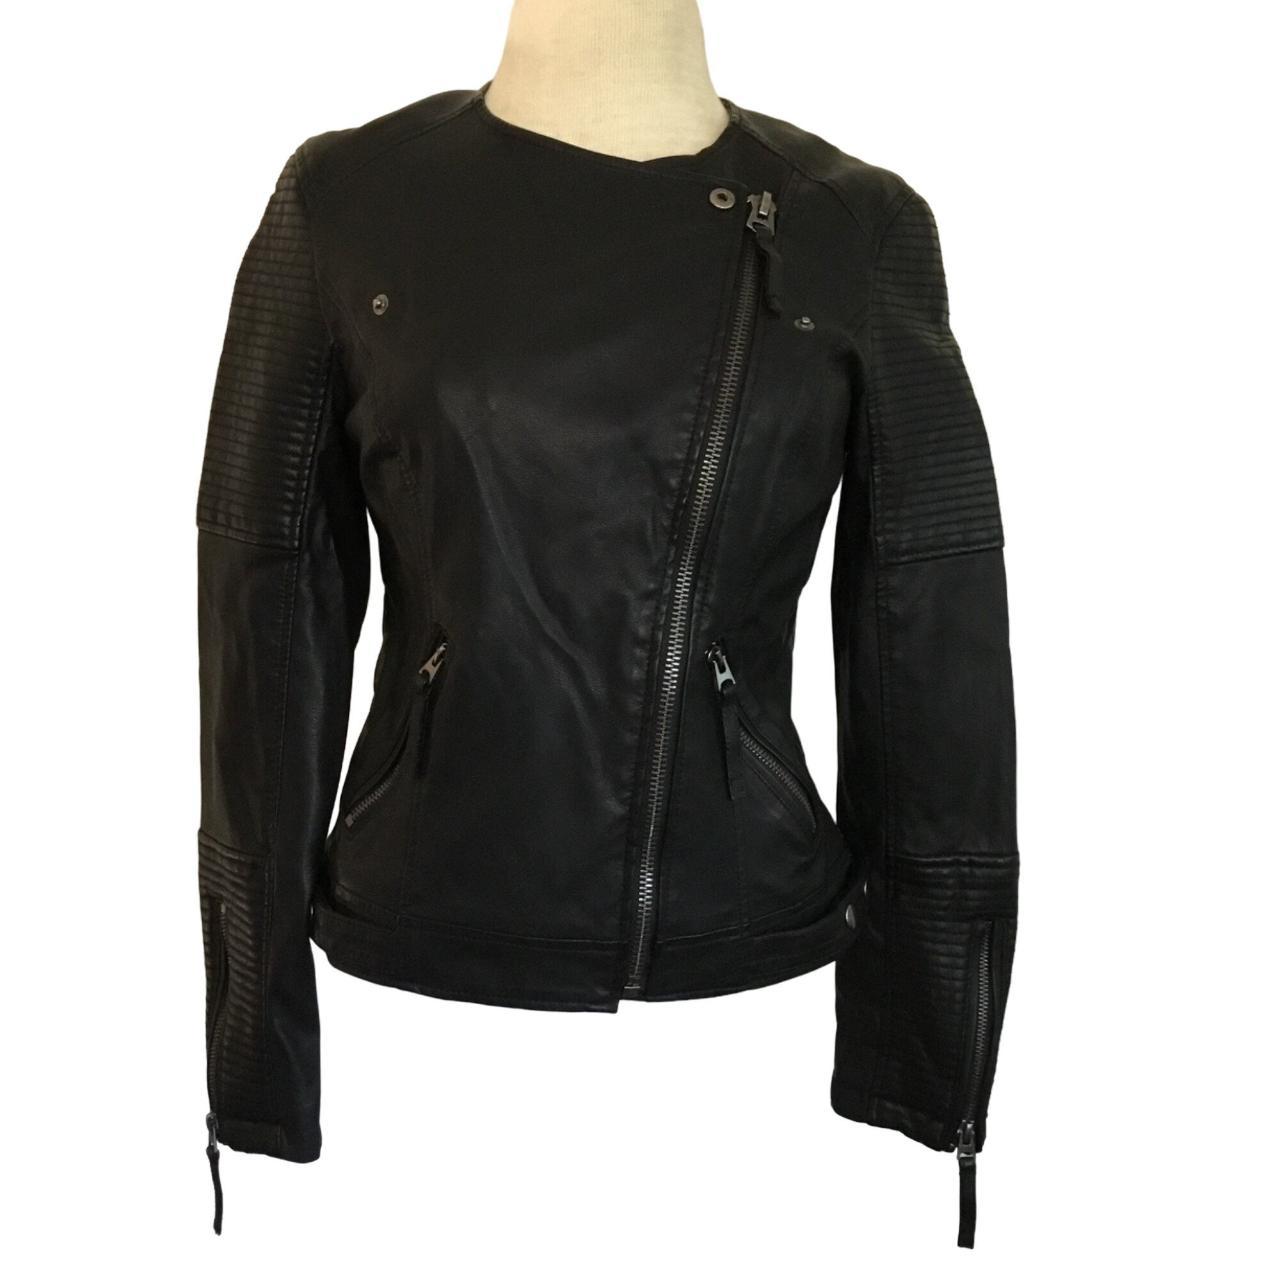 Top Shop Woman's Faux Black Leather Biker Jacket... - Depop